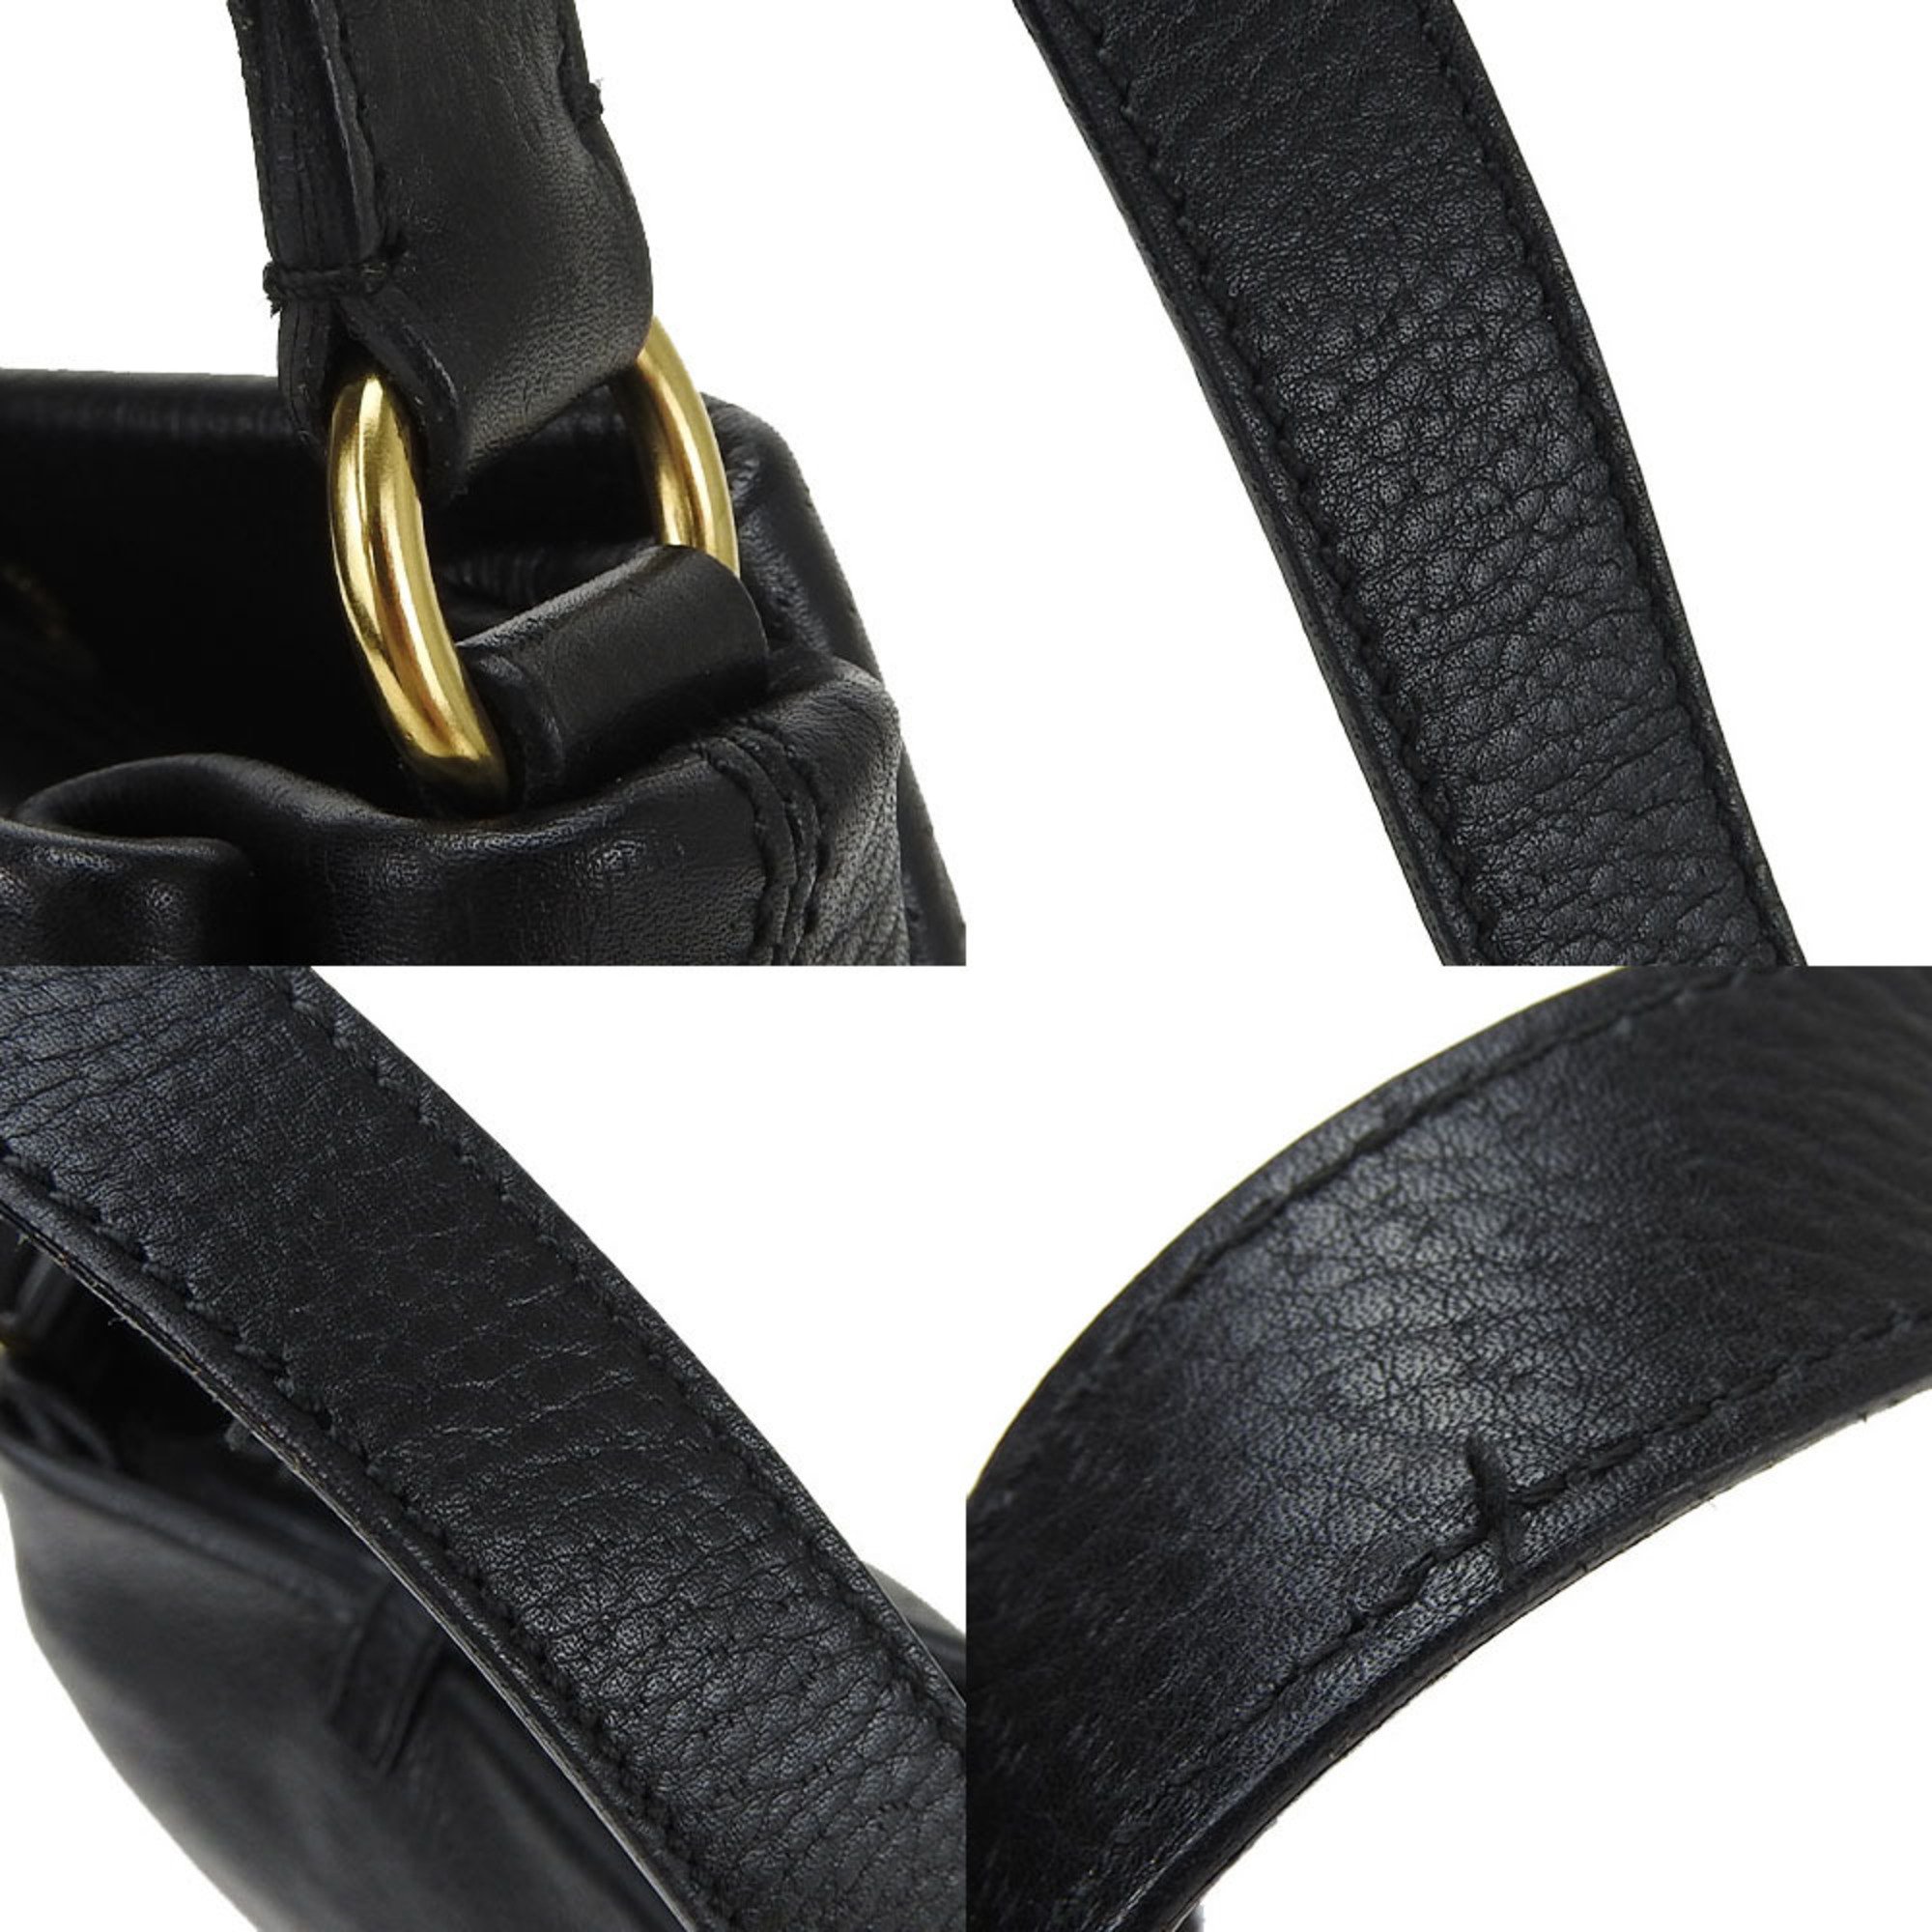 Salvatore Ferragamo one shoulder bag AF-21 5412 Gancini leather black chic ladies